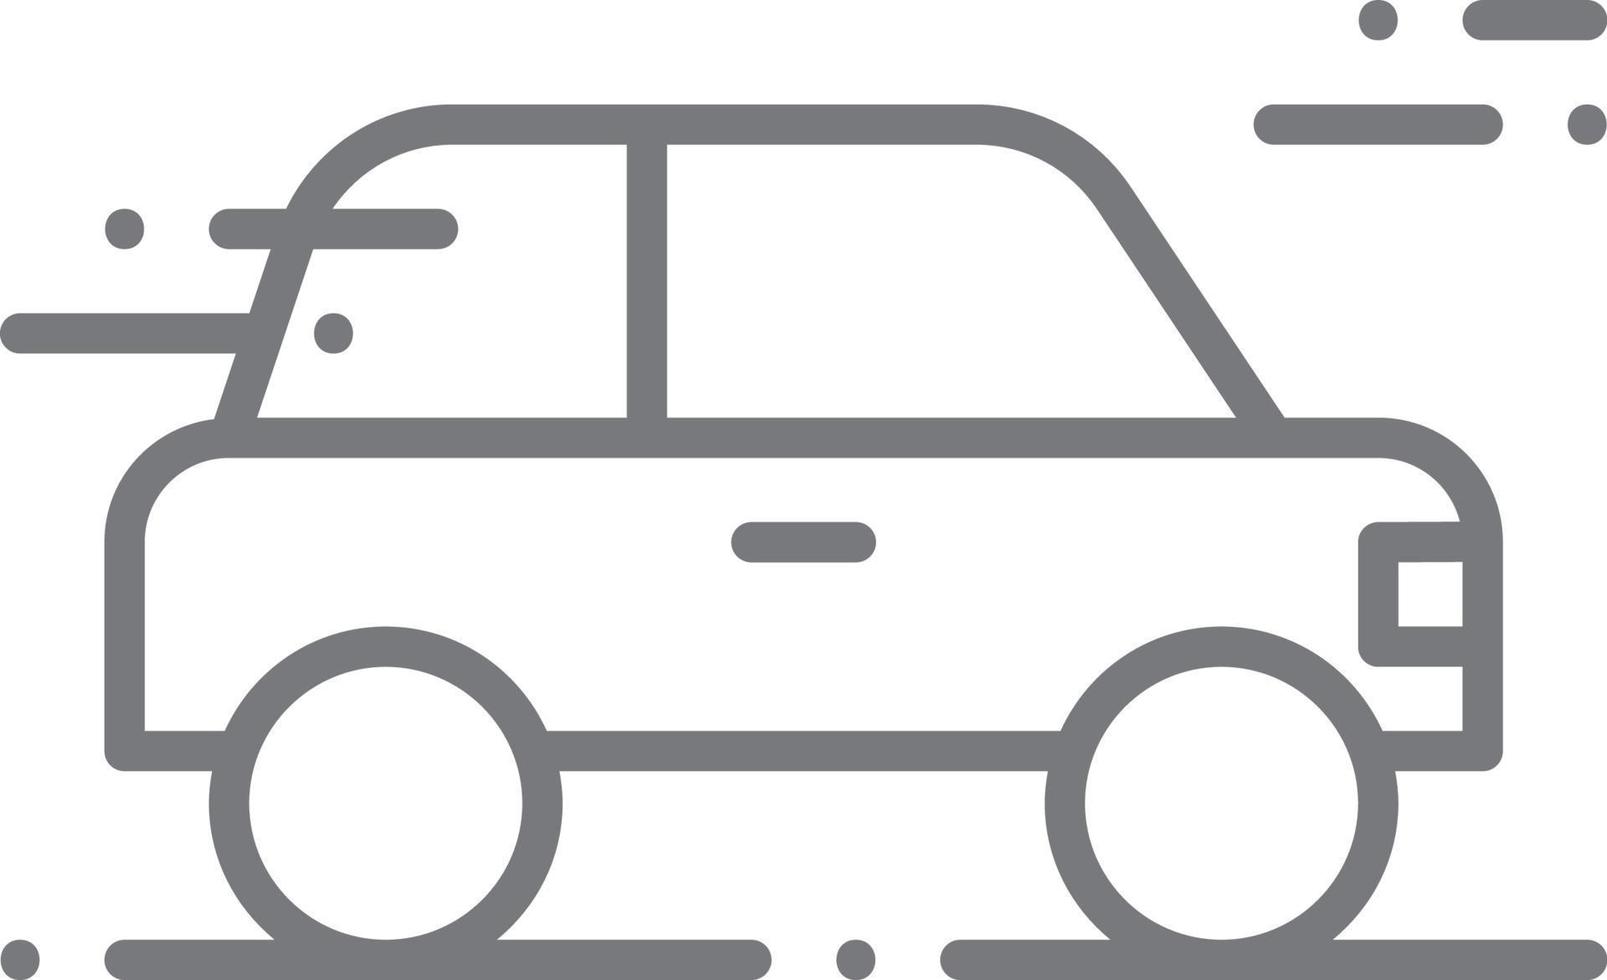 bil transport ikon människor ikoner med svart översikt stil. fordon, symbol, transport, linje, översikt, resa, bil, redigerbar, piktogram, isolerat, platt. vektor illustration